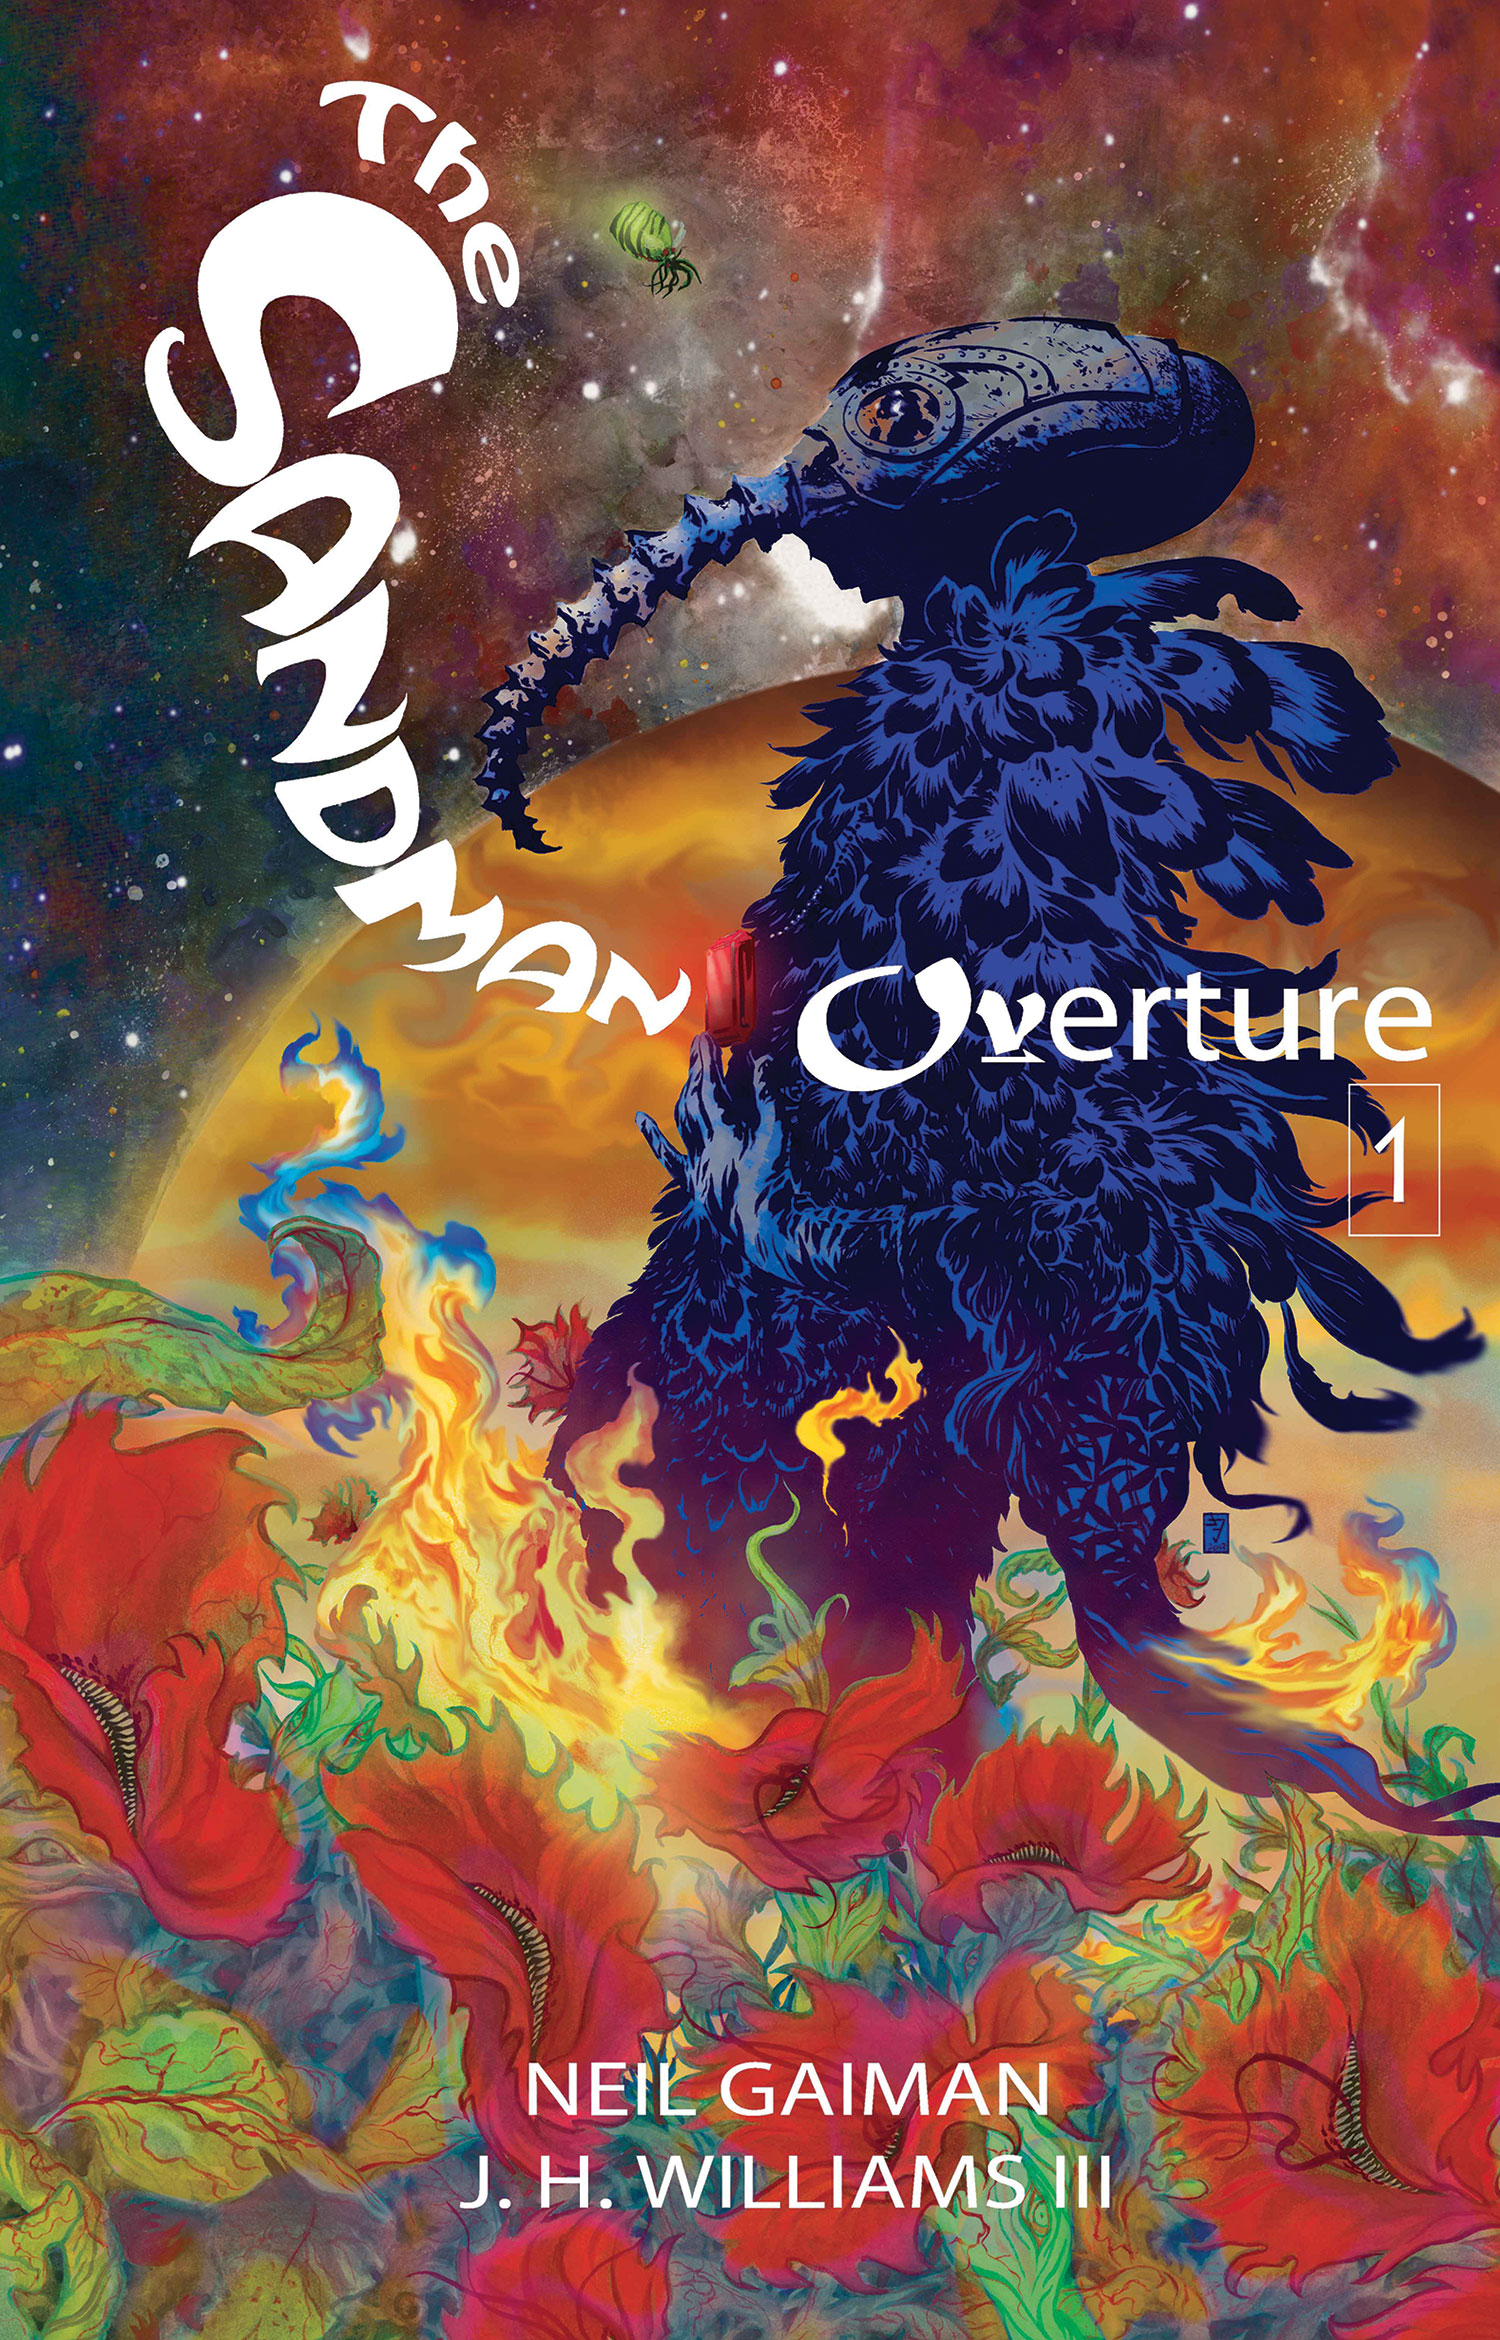 Sandman: Overture #7